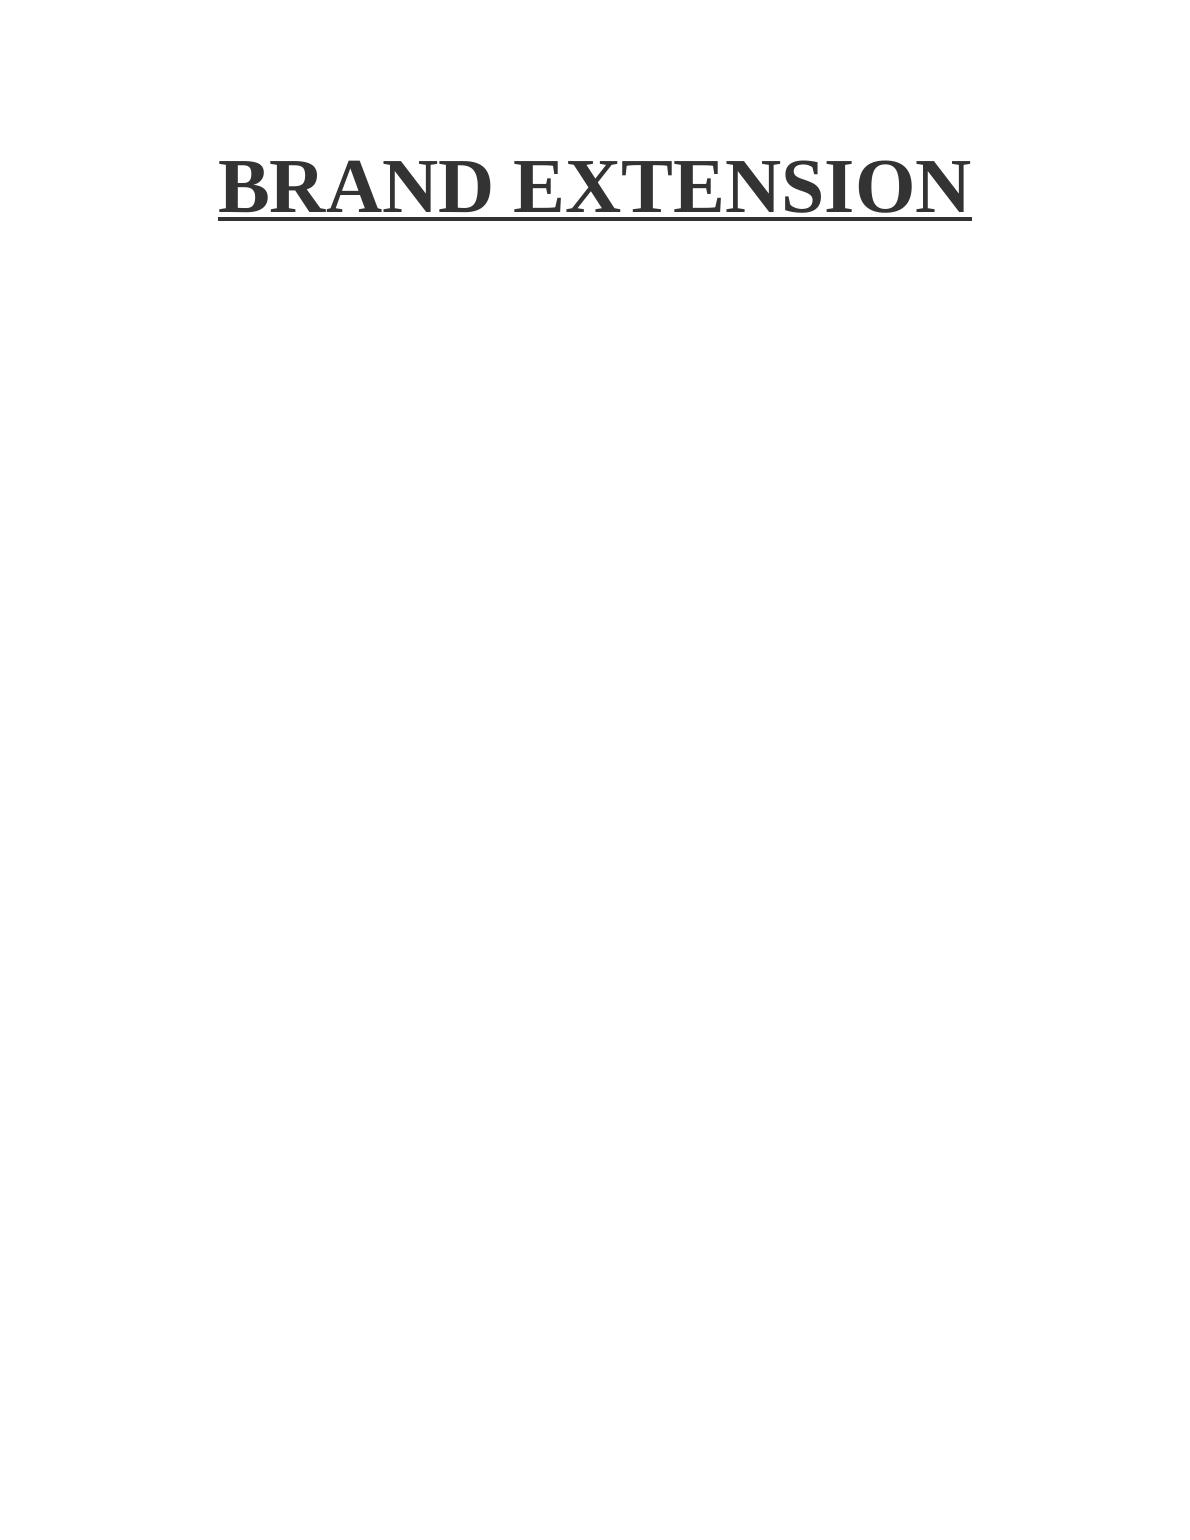 Brand Extension Assignment - Louis Vuitton